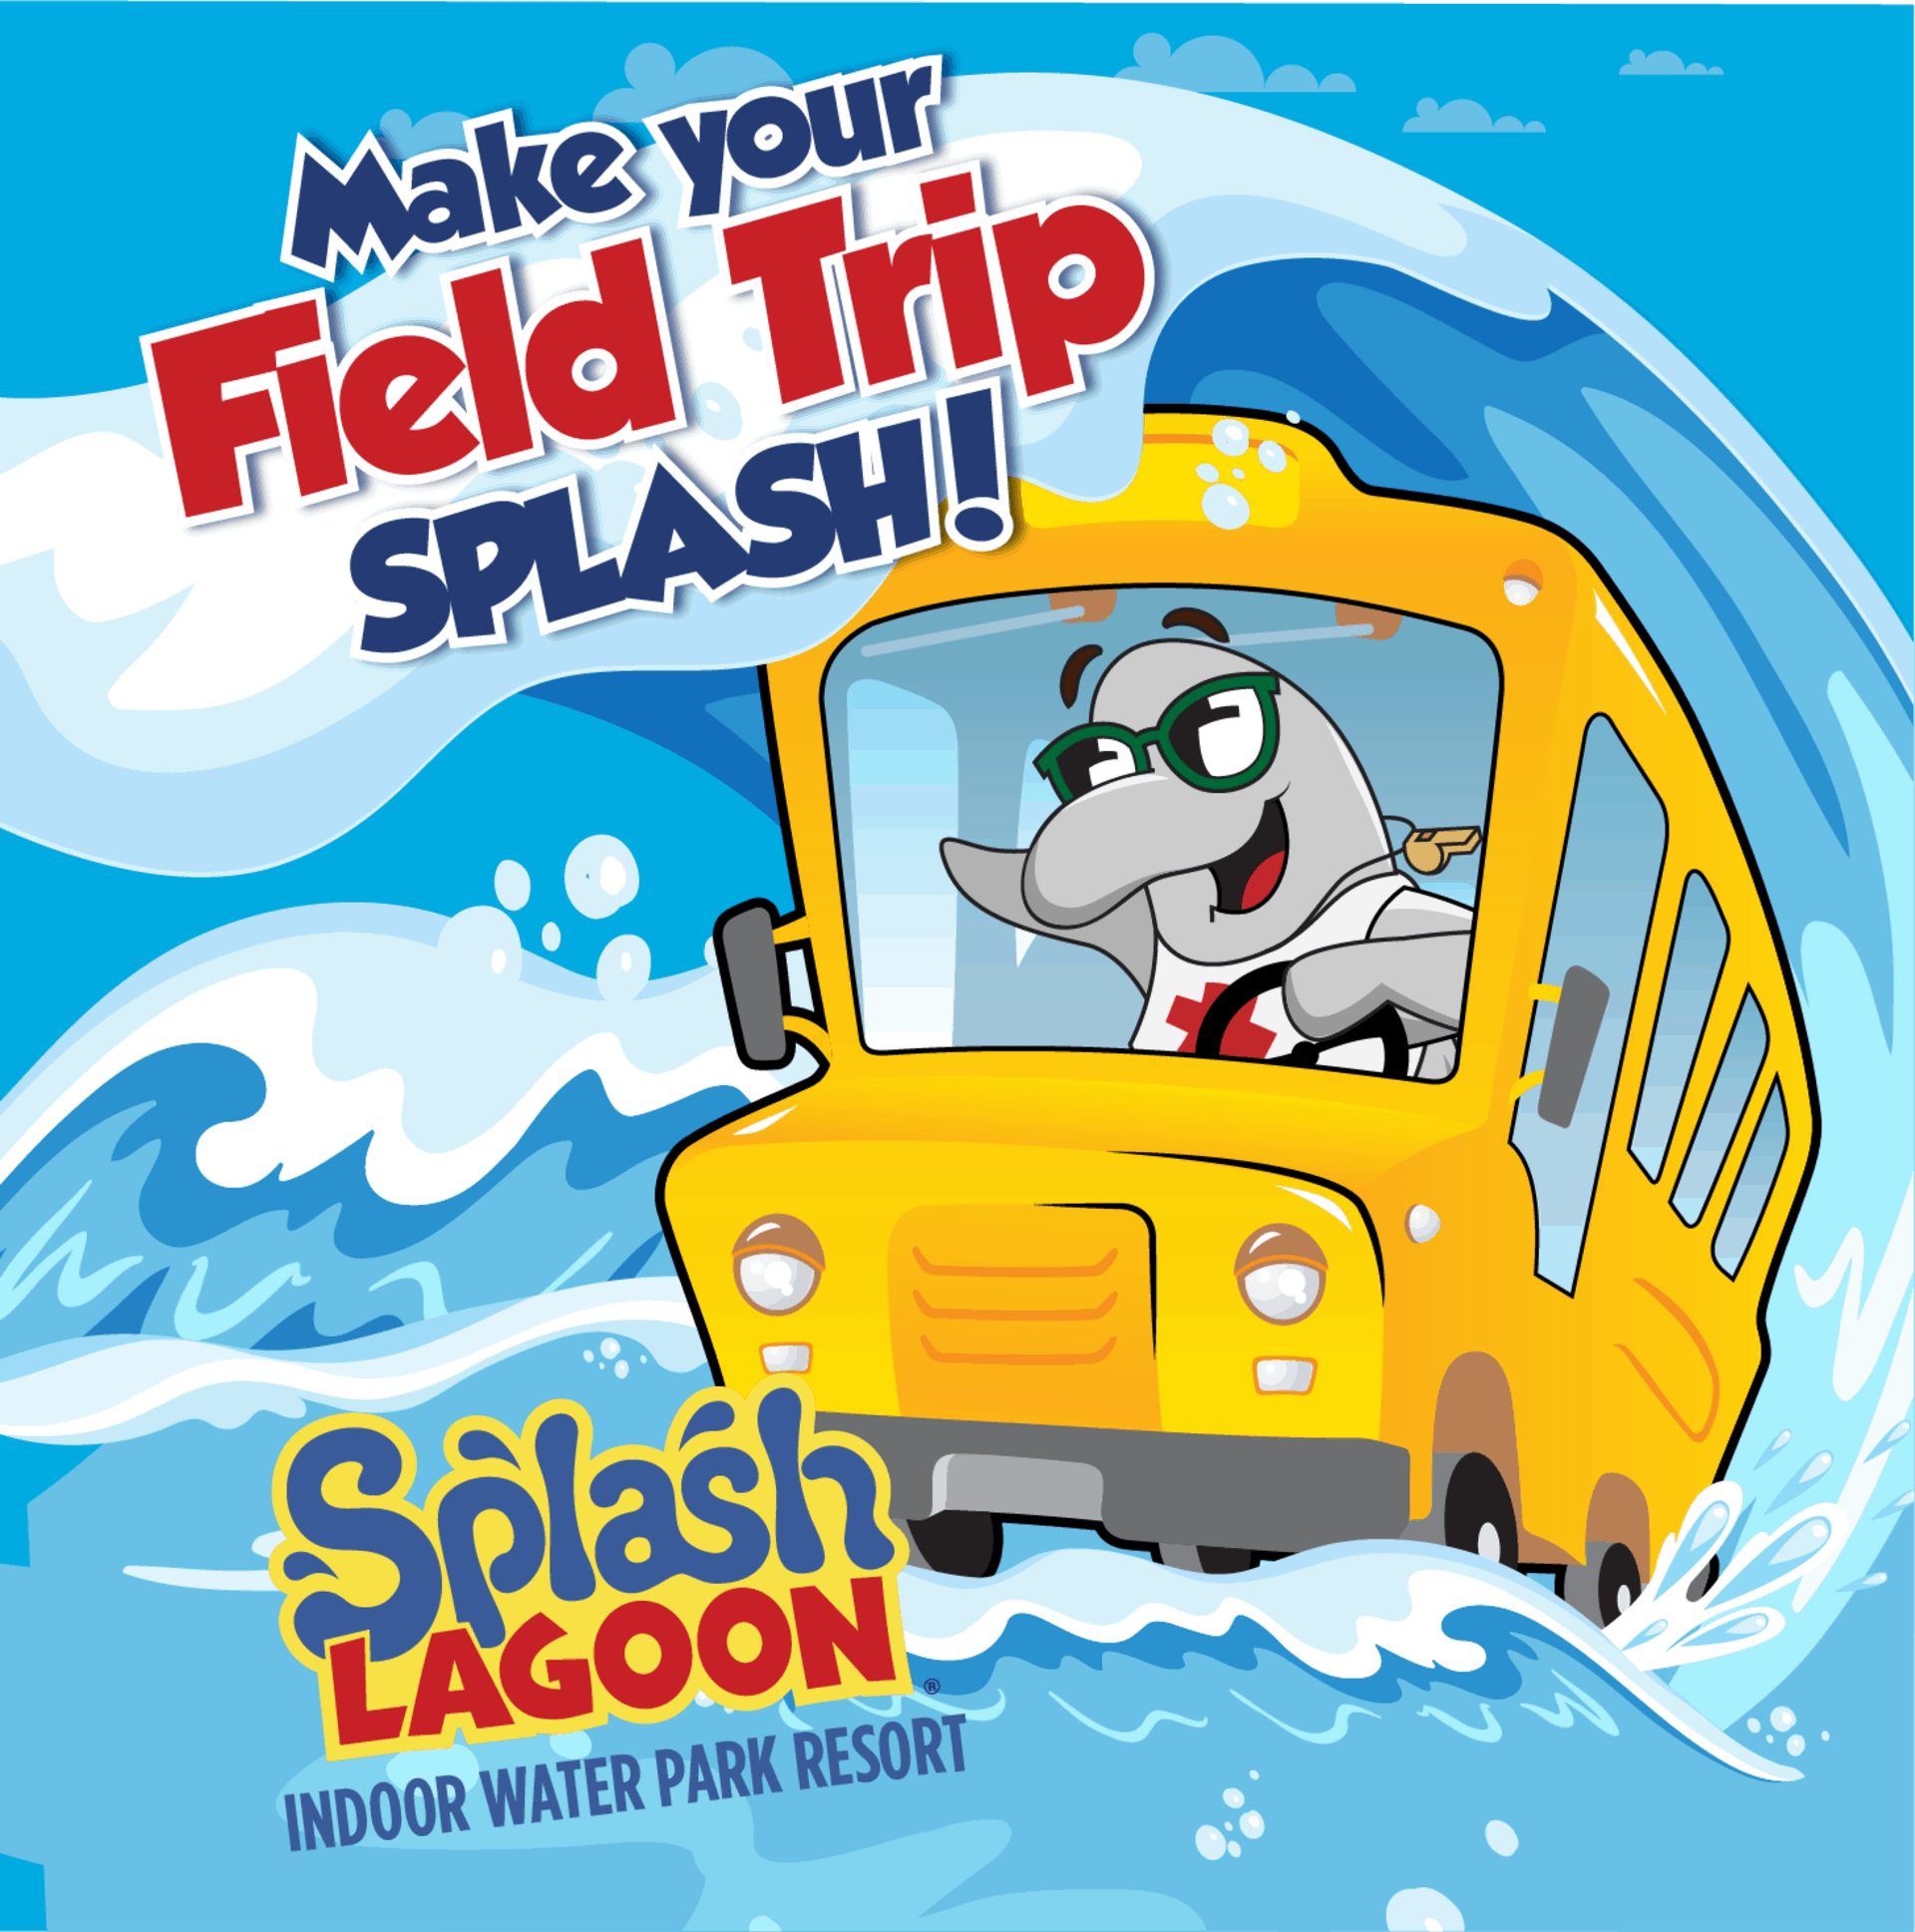 Make your field trip splash